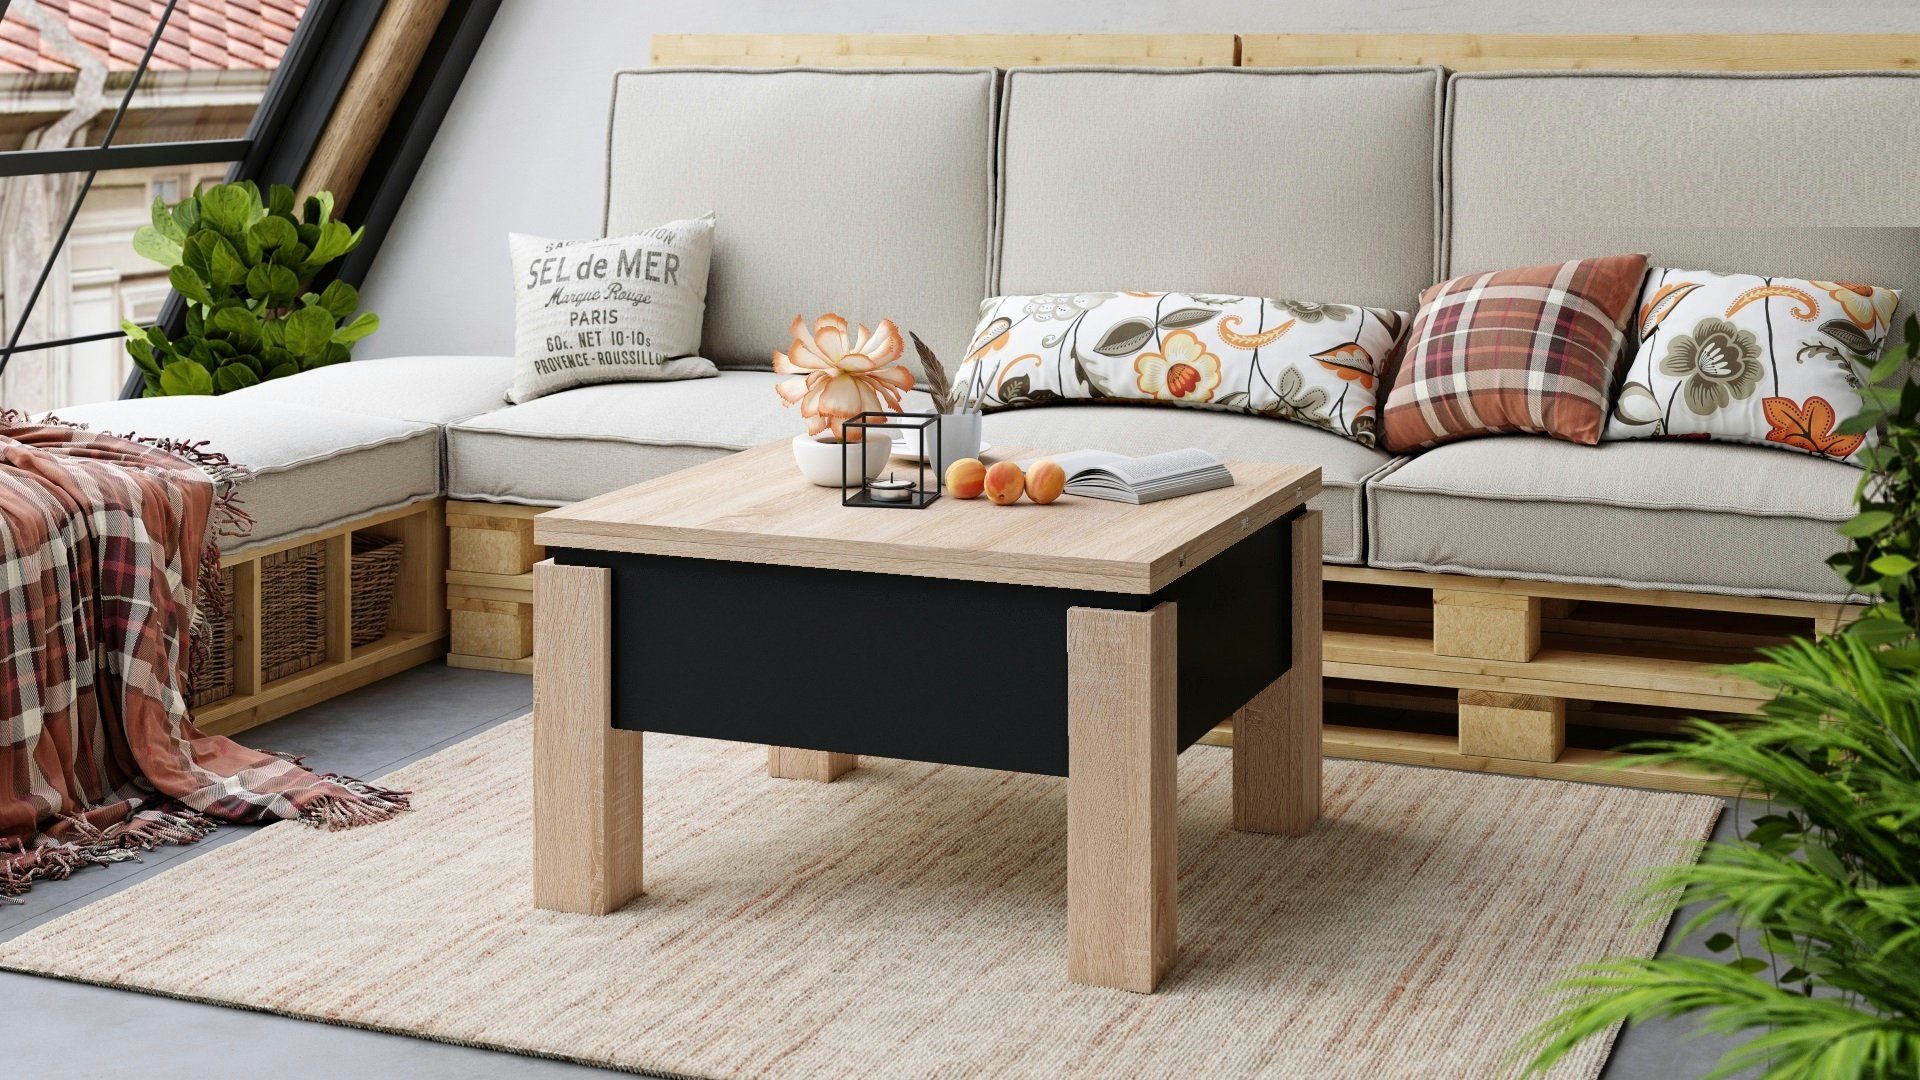 designimpex Couchtisch Design Couchtisch Tisch Eiche aufklappbar Oslo / Schwarz höhenverstellbar Sonoma matt Esstisch